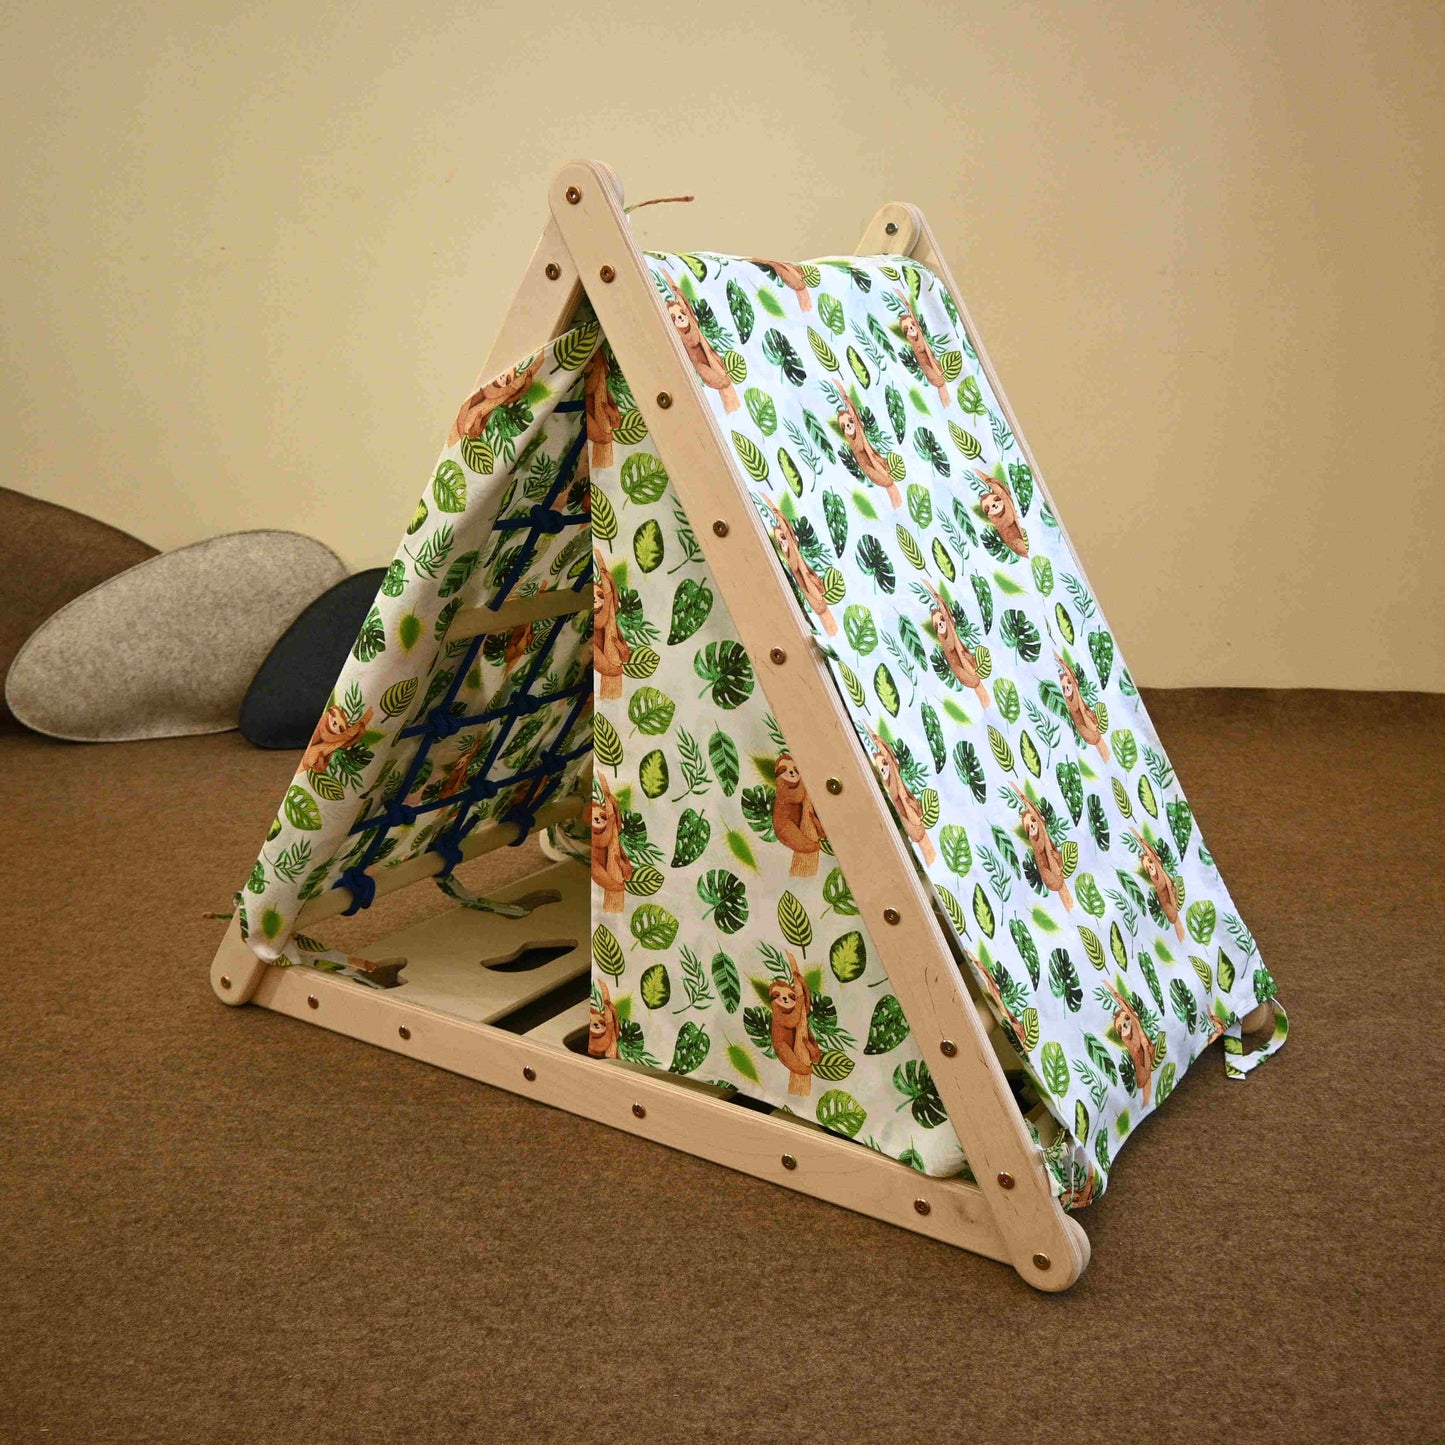 Zelt für Kletterdreieck, versch. Designs